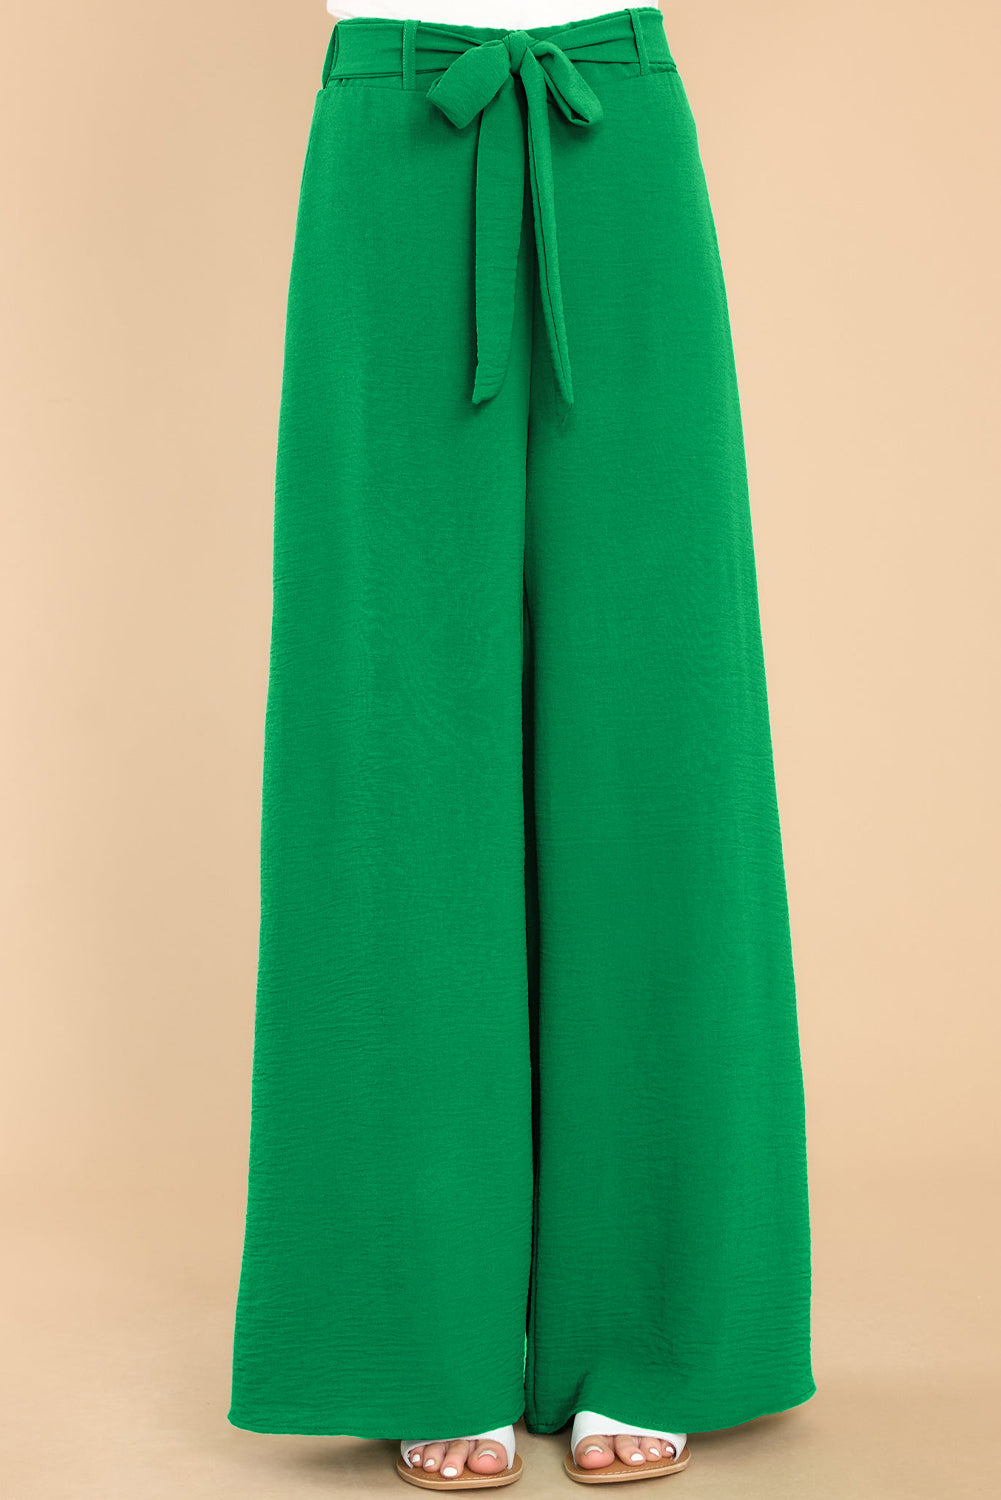 Hellgrüne Hose mit weitem Bein und hohem Bund, Schlaufen und Gürtel